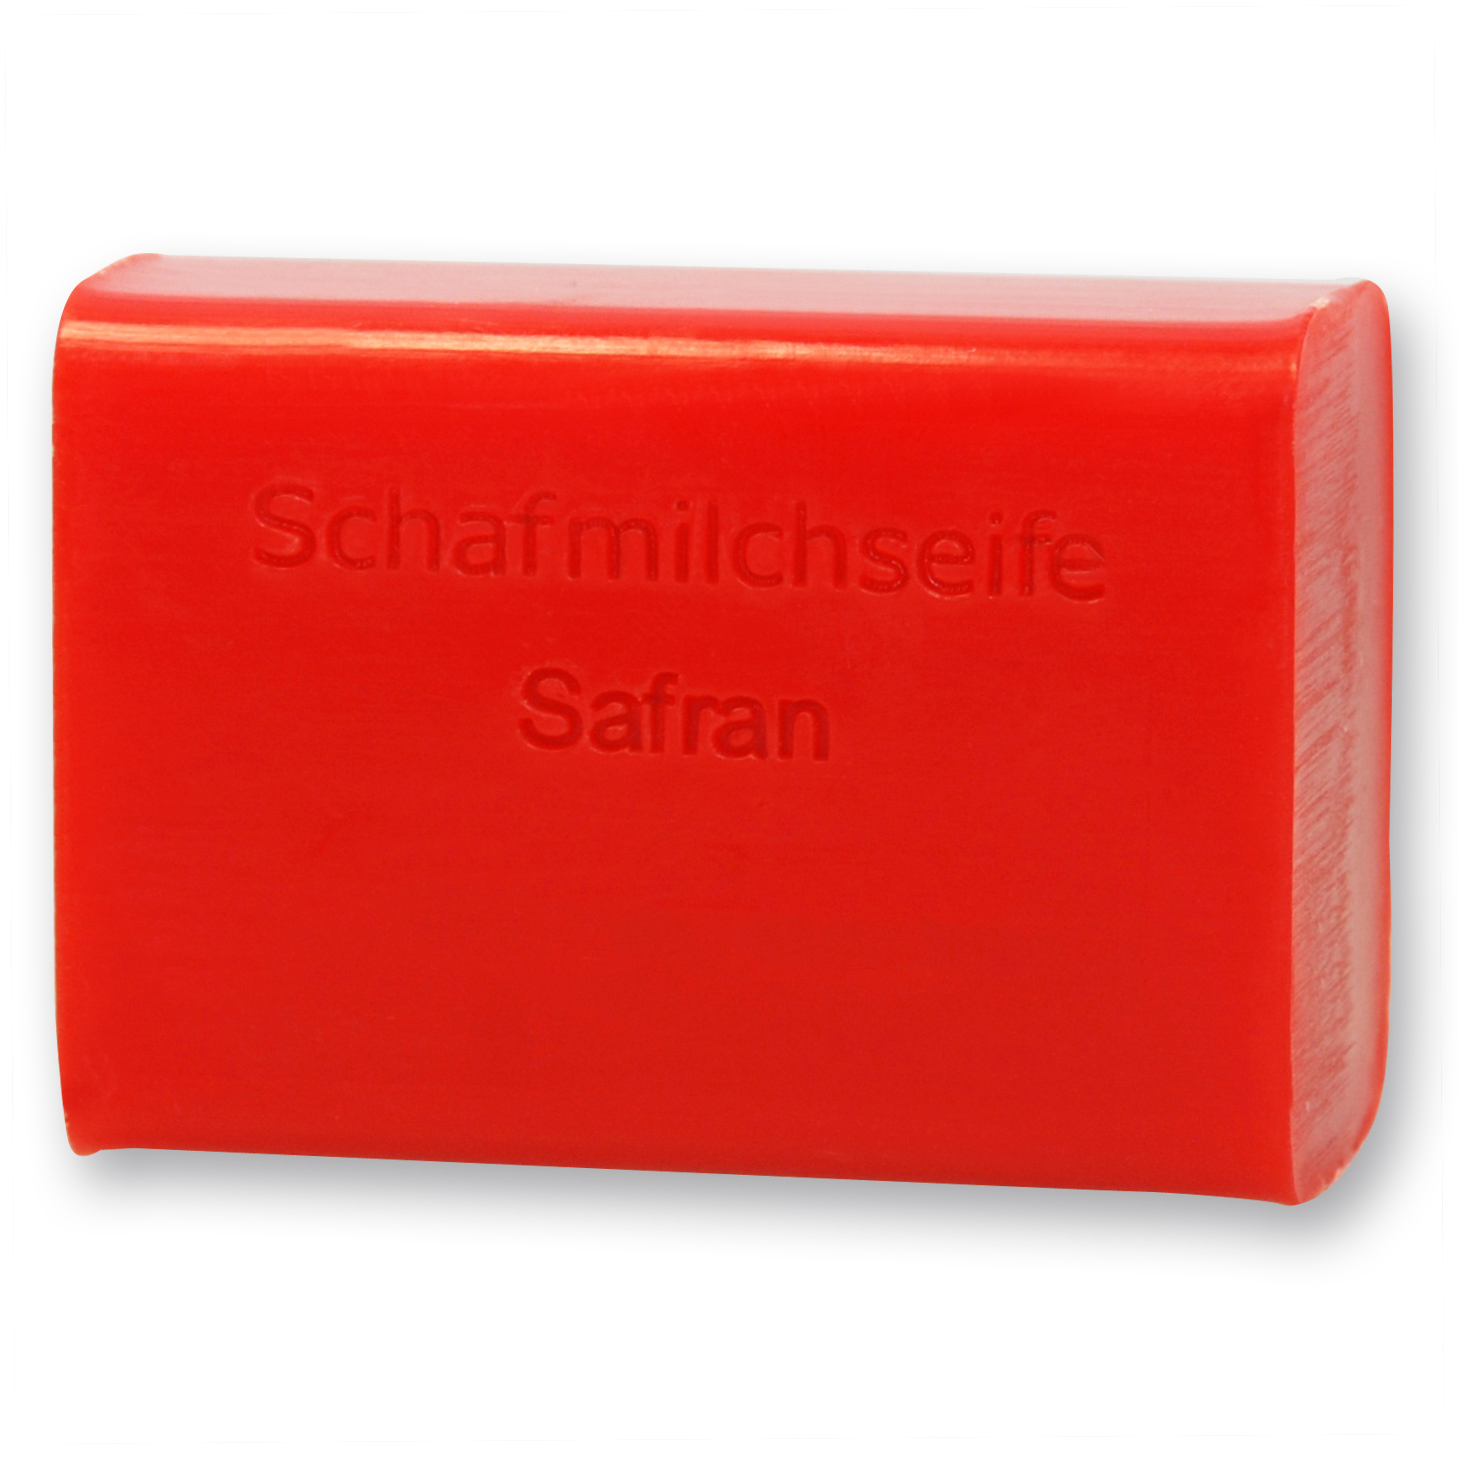 1907 Schafmilchseife Safran